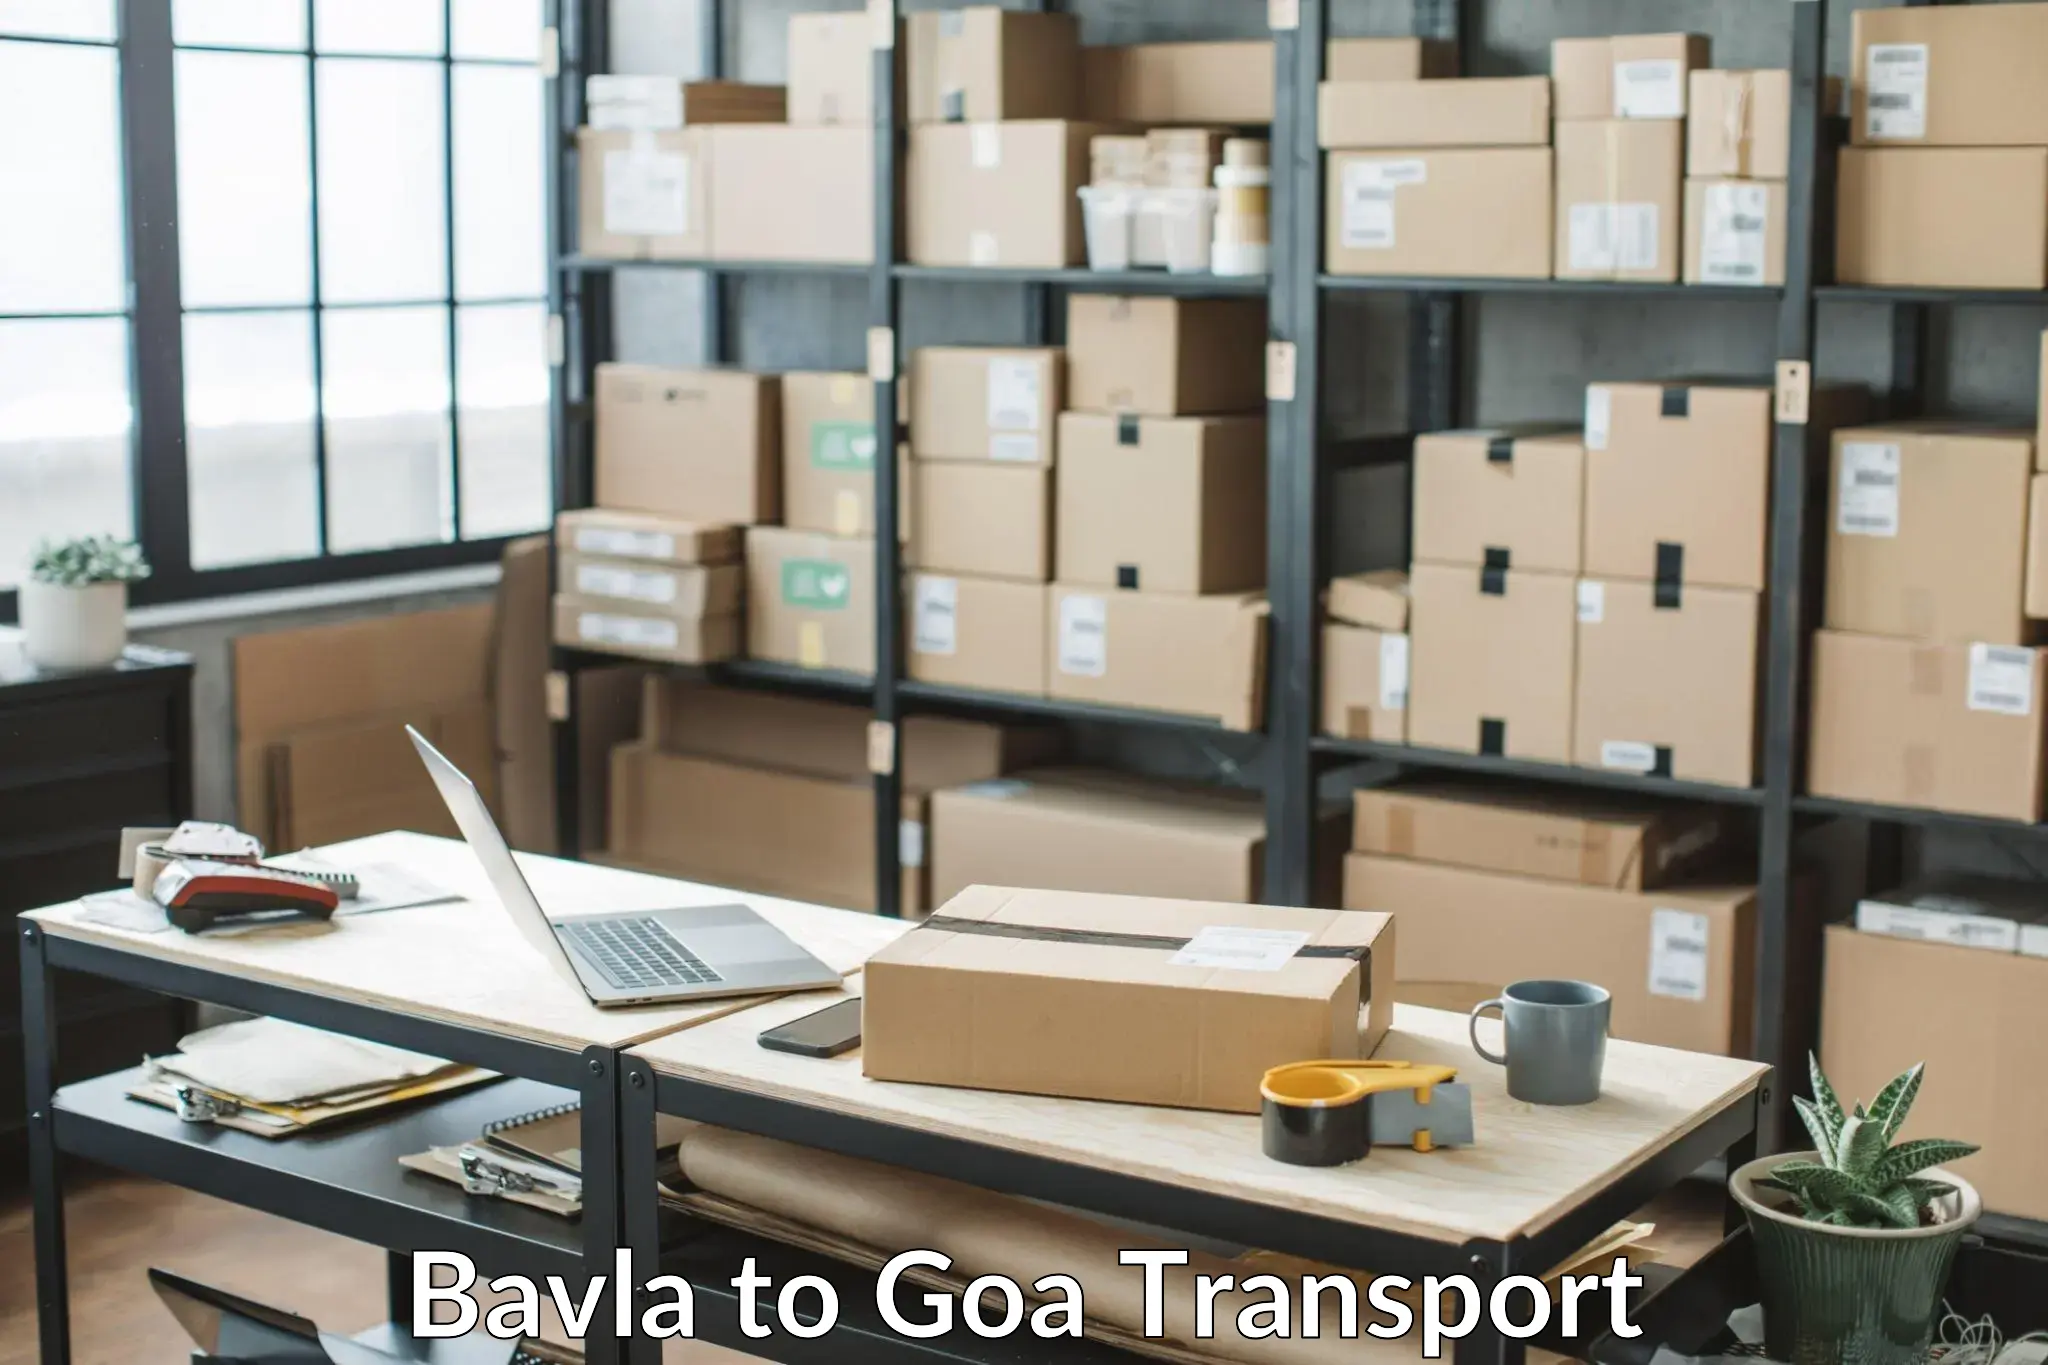 Nearby transport service Bavla to South Goa